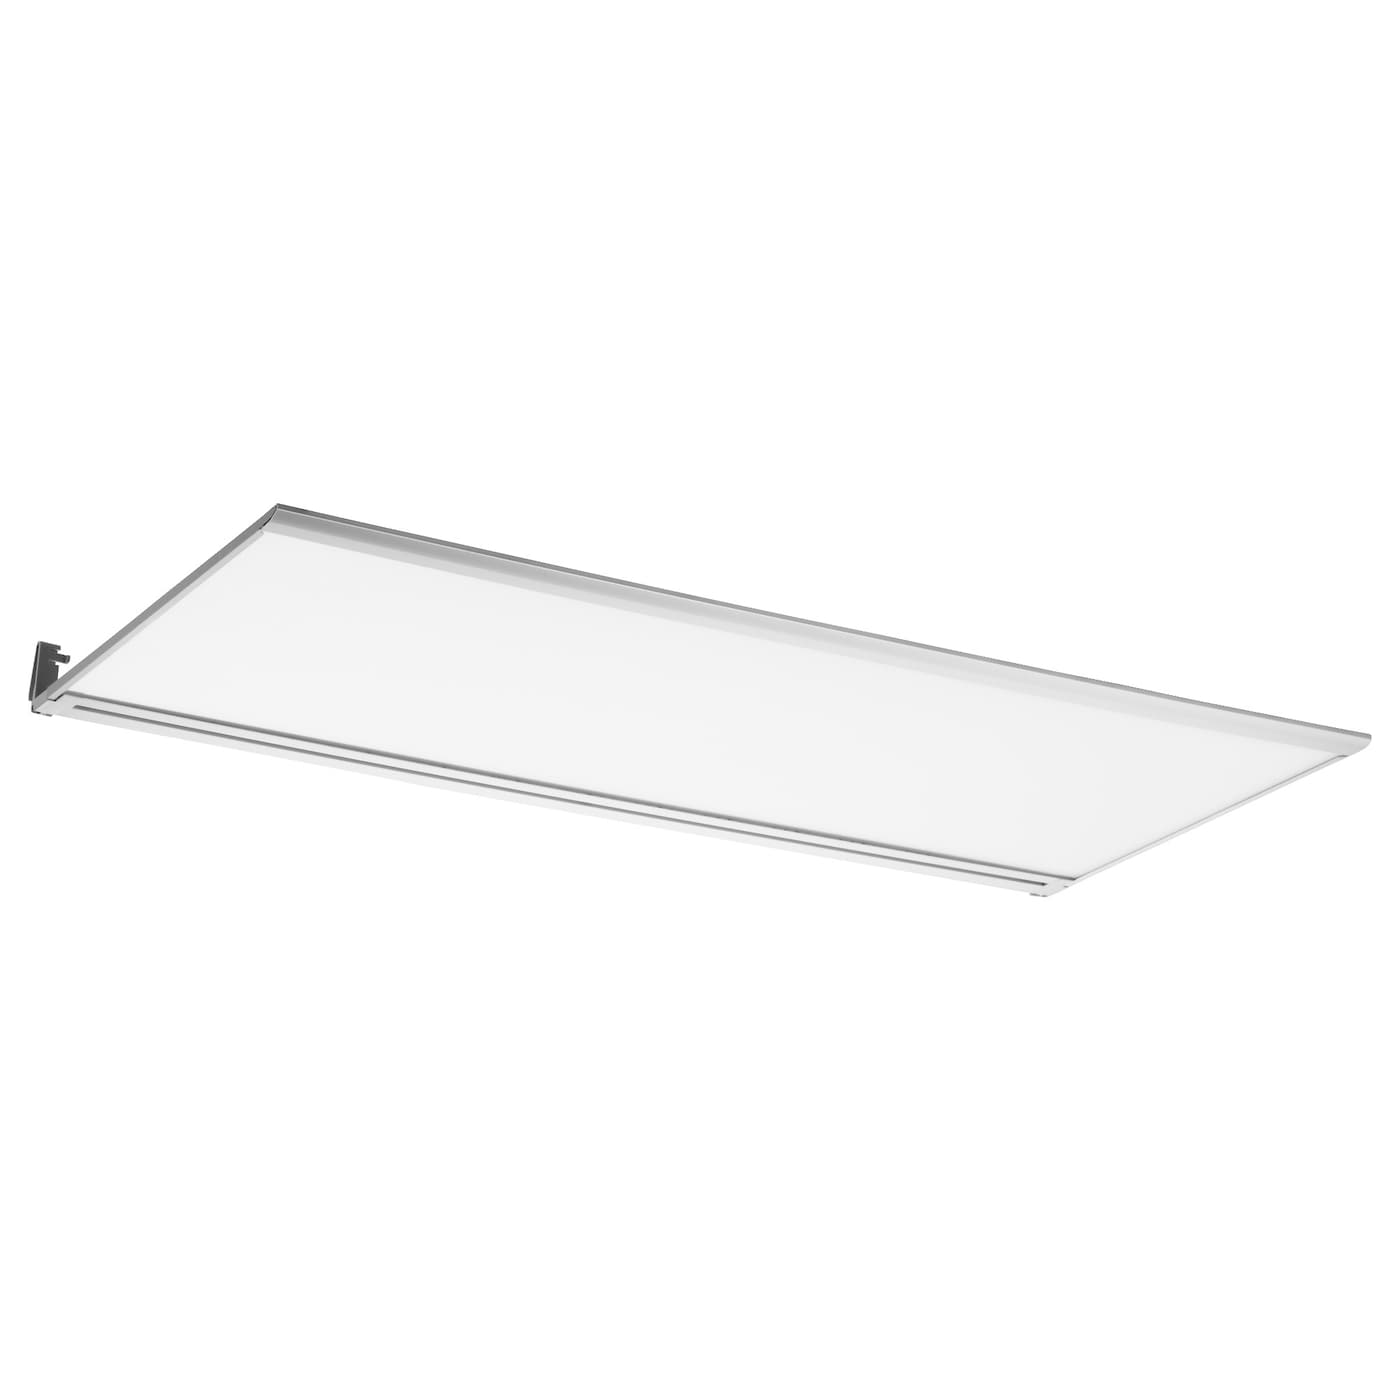 Светильники на светодиодах - IRSTA IKEA/ ИРСТА ИКЕА, 8 мм,  белый